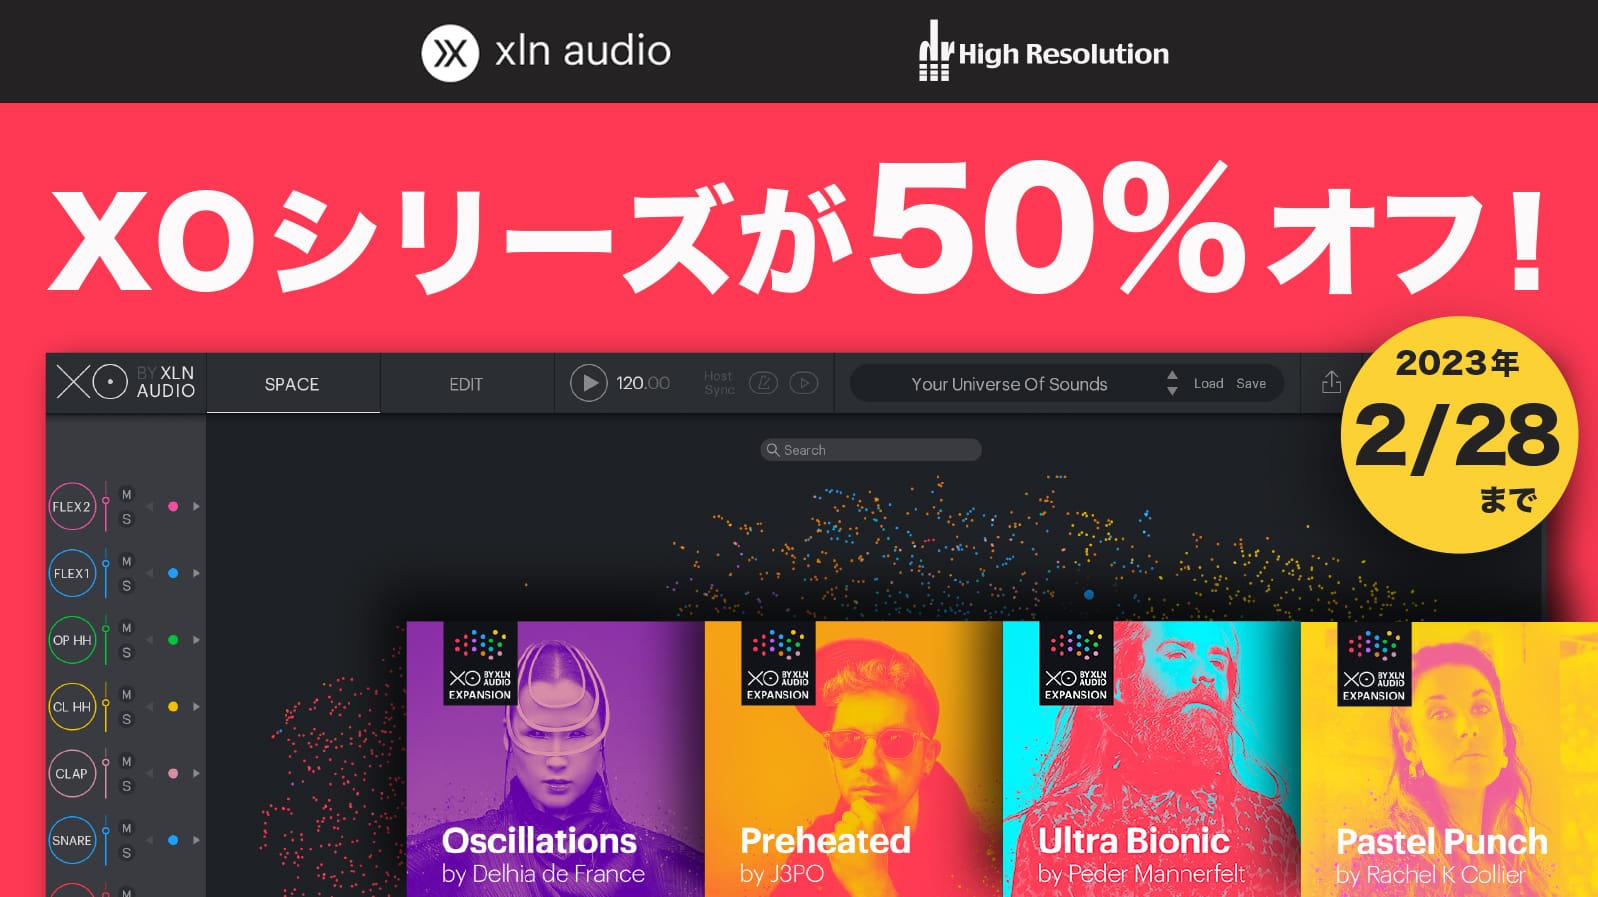 XLN Audioのビートメイキングツール「XO」と拡張パックが50%オフ